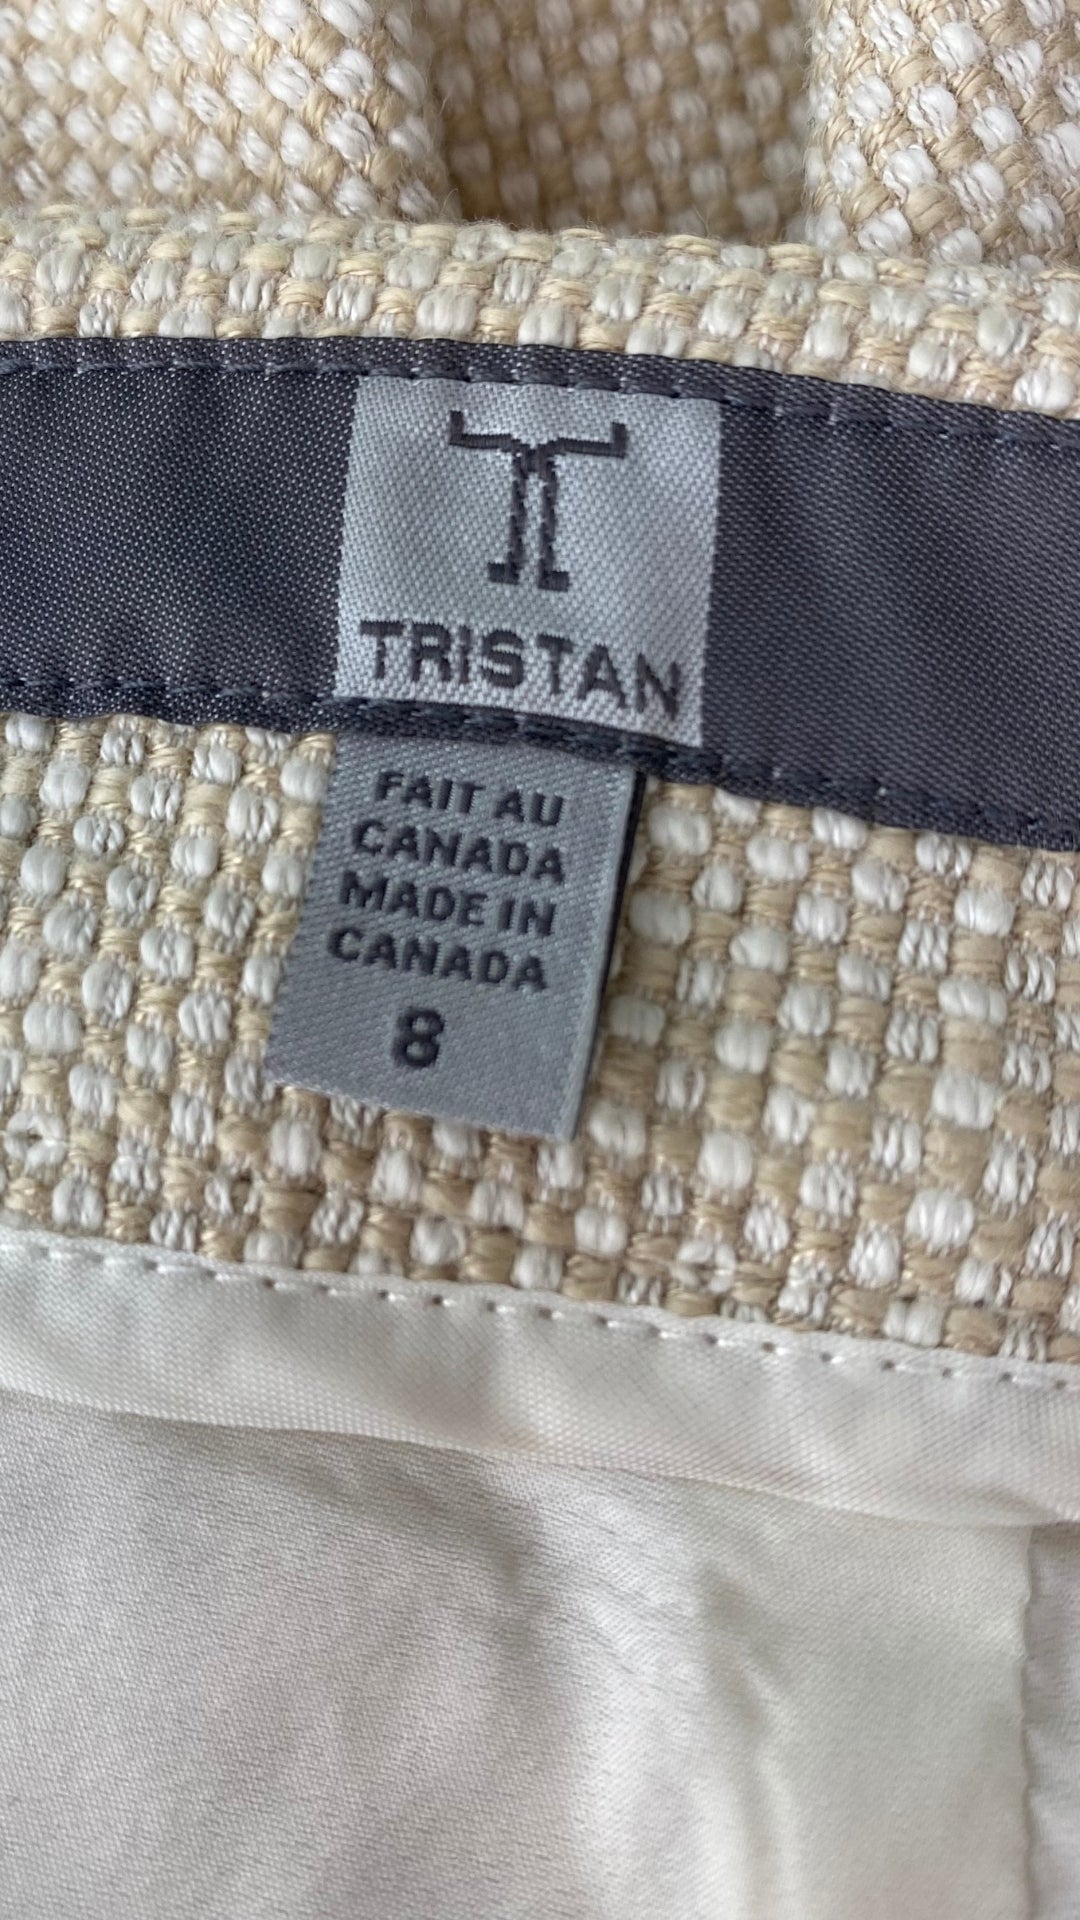 Jupe crème et sable en tweed Tristan, taille 8. Vue de l'étiquette de marque et taille.